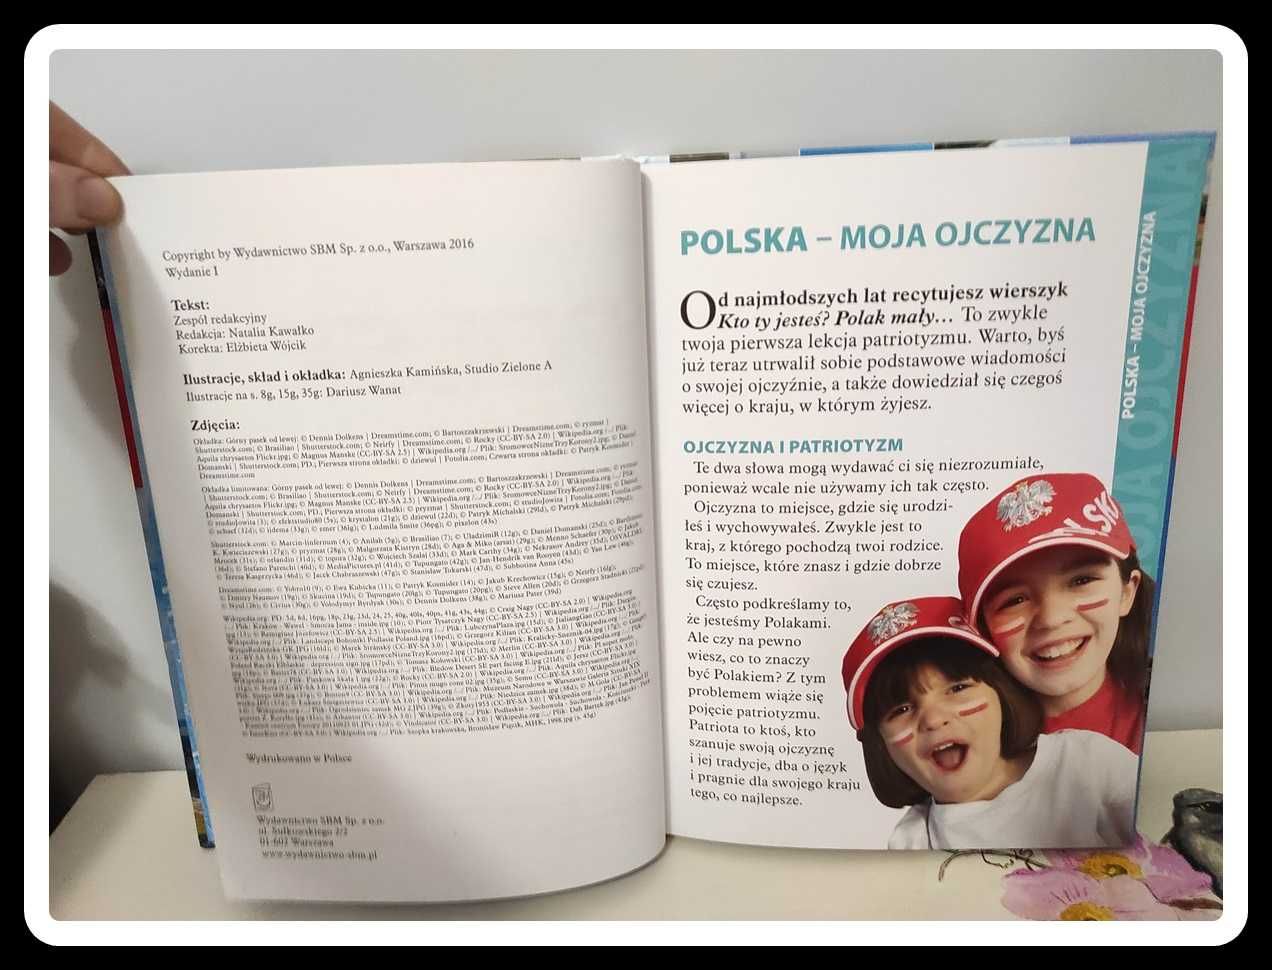 Książka: POLSKA - Elementarz dla dzieci Wyd. SBM 2016